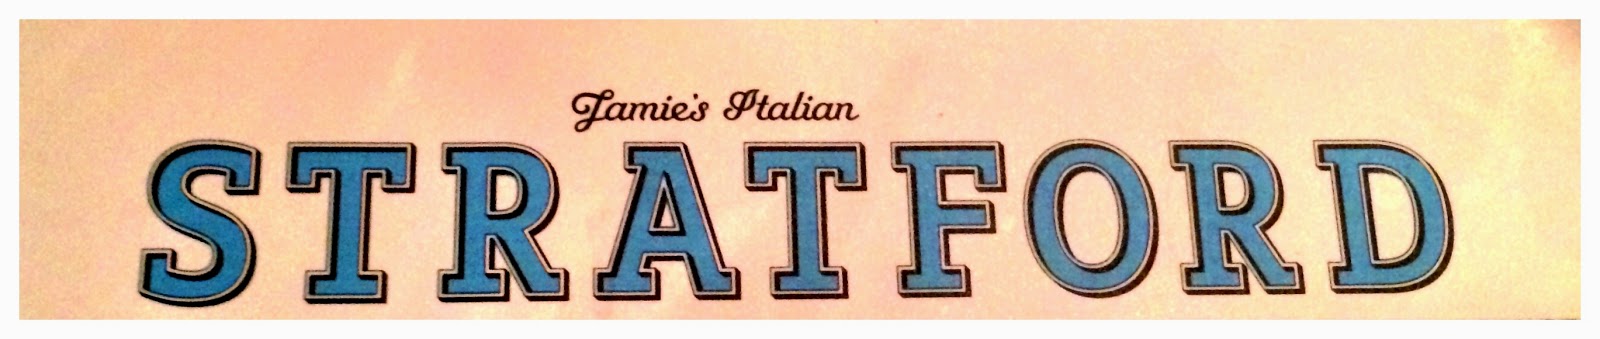 Jamie's Italian Stratford 